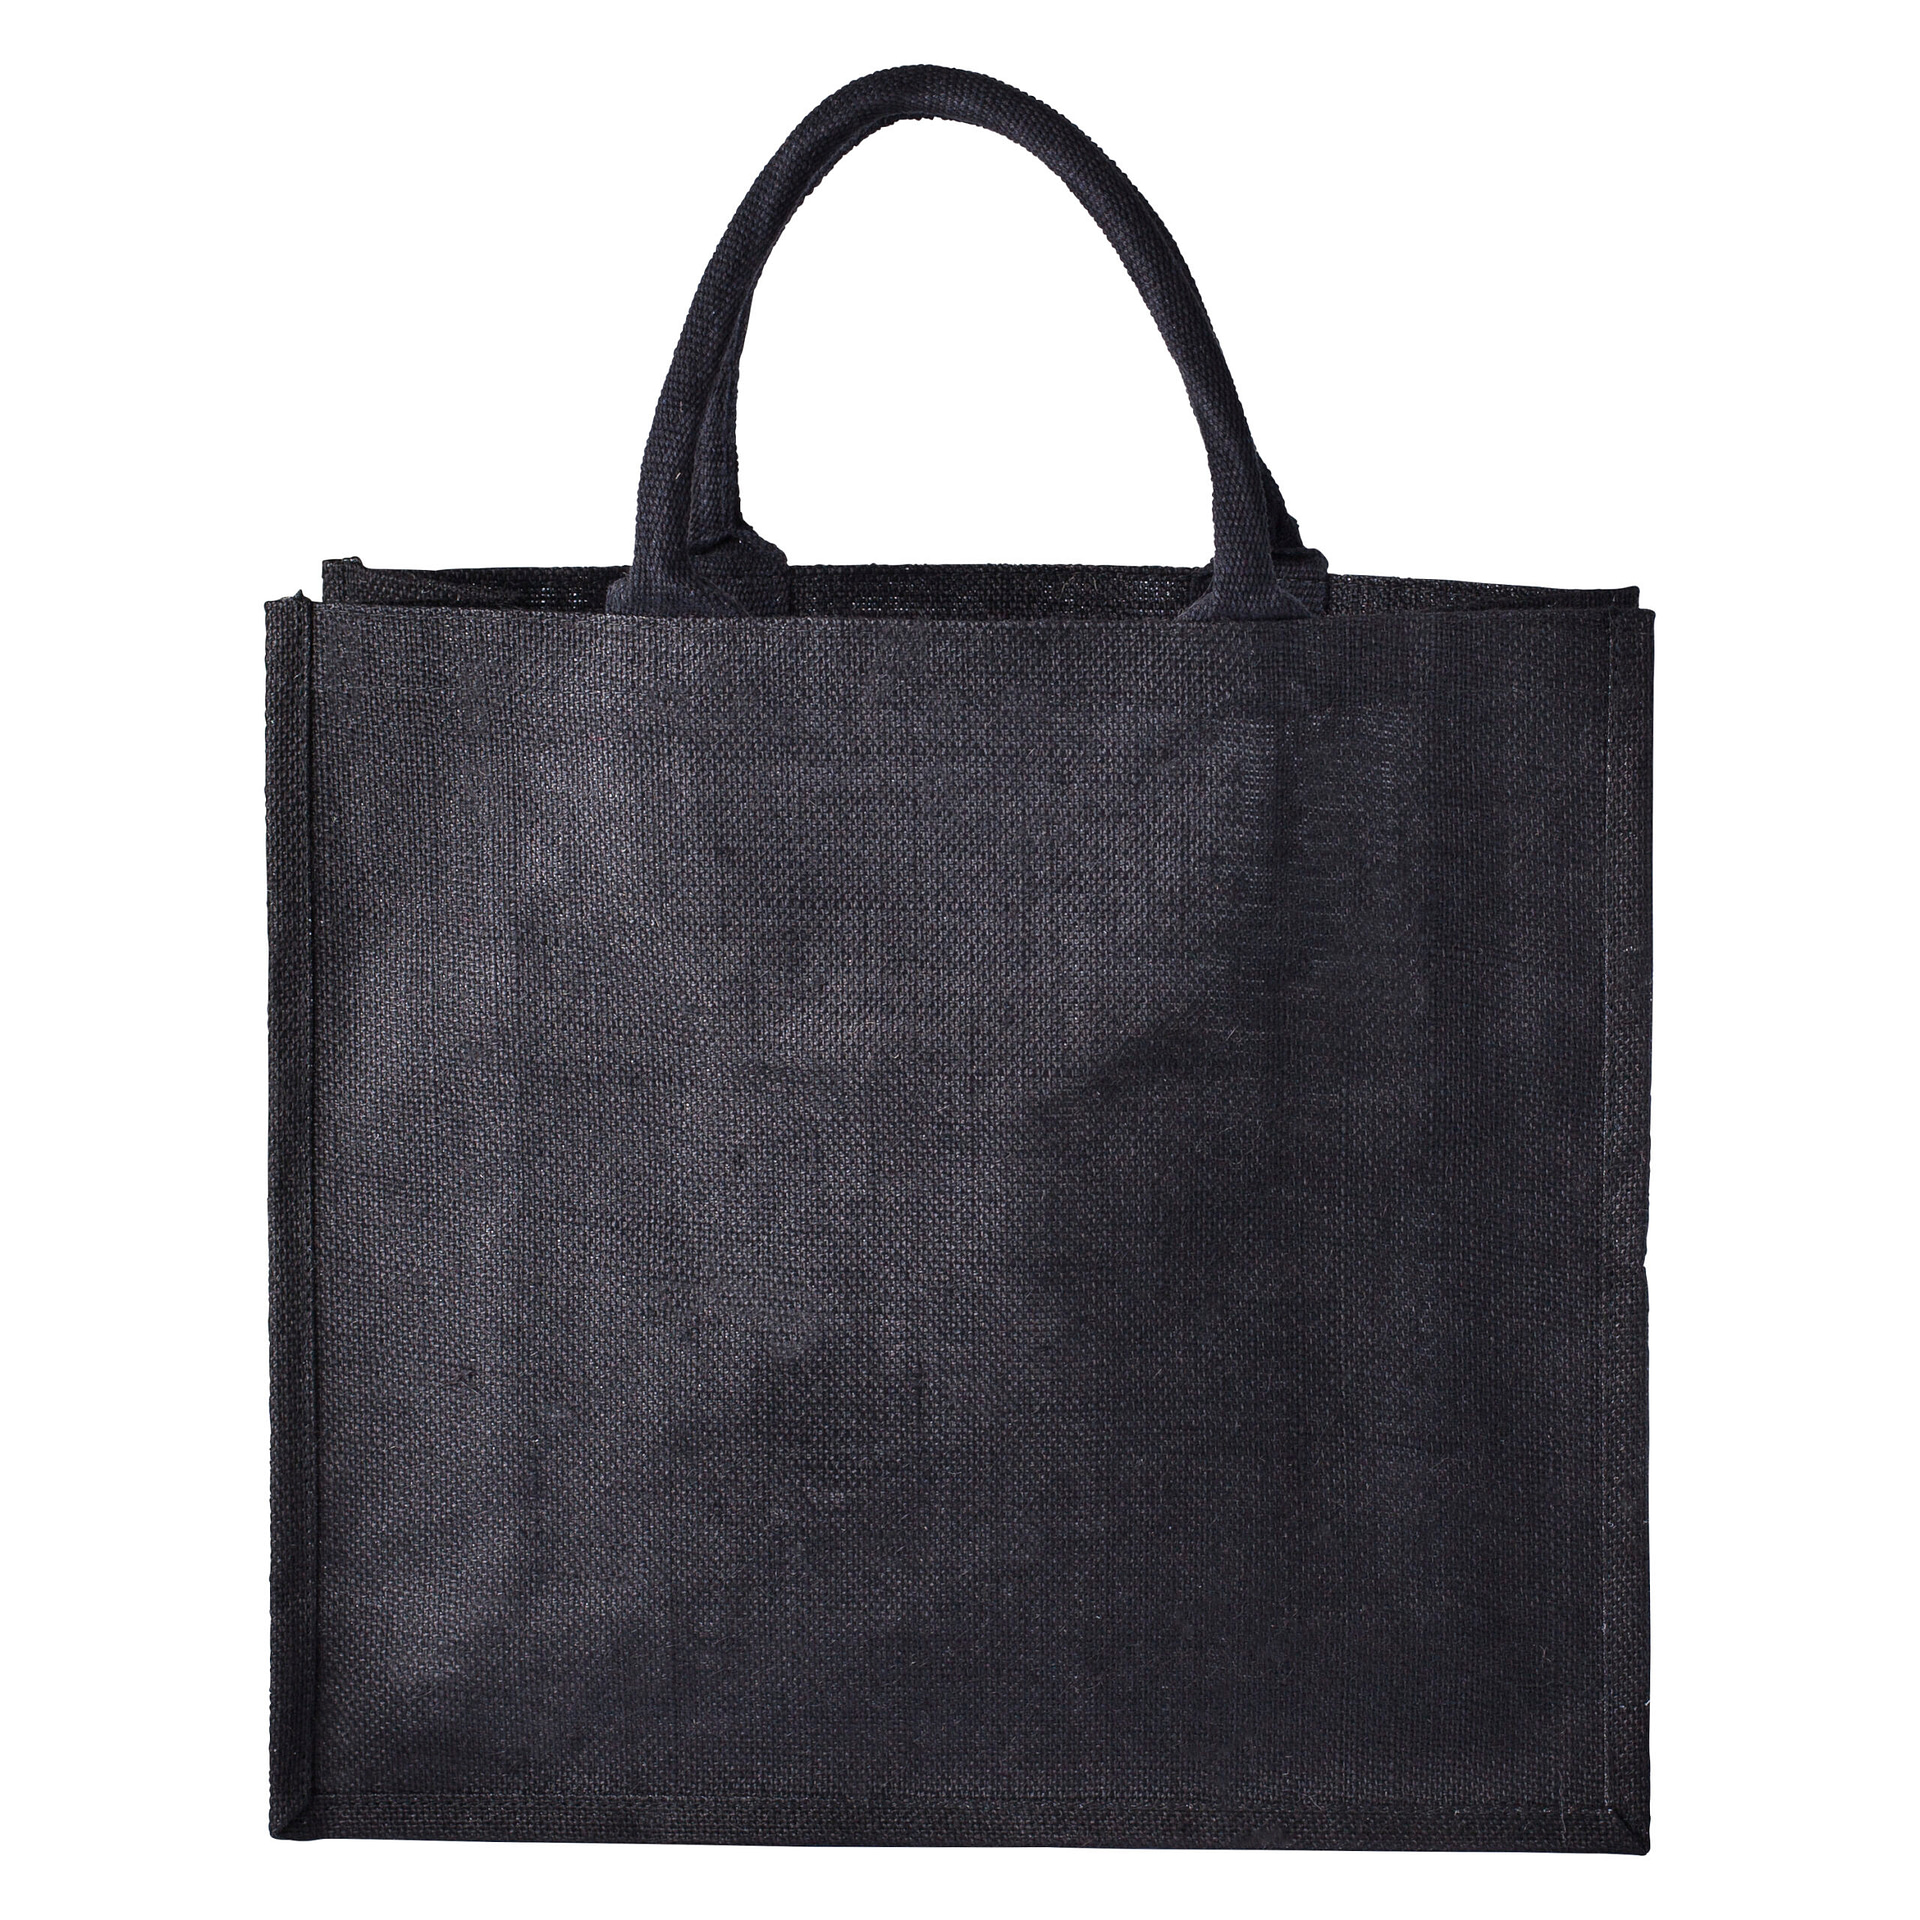 Barham Black Jute bag